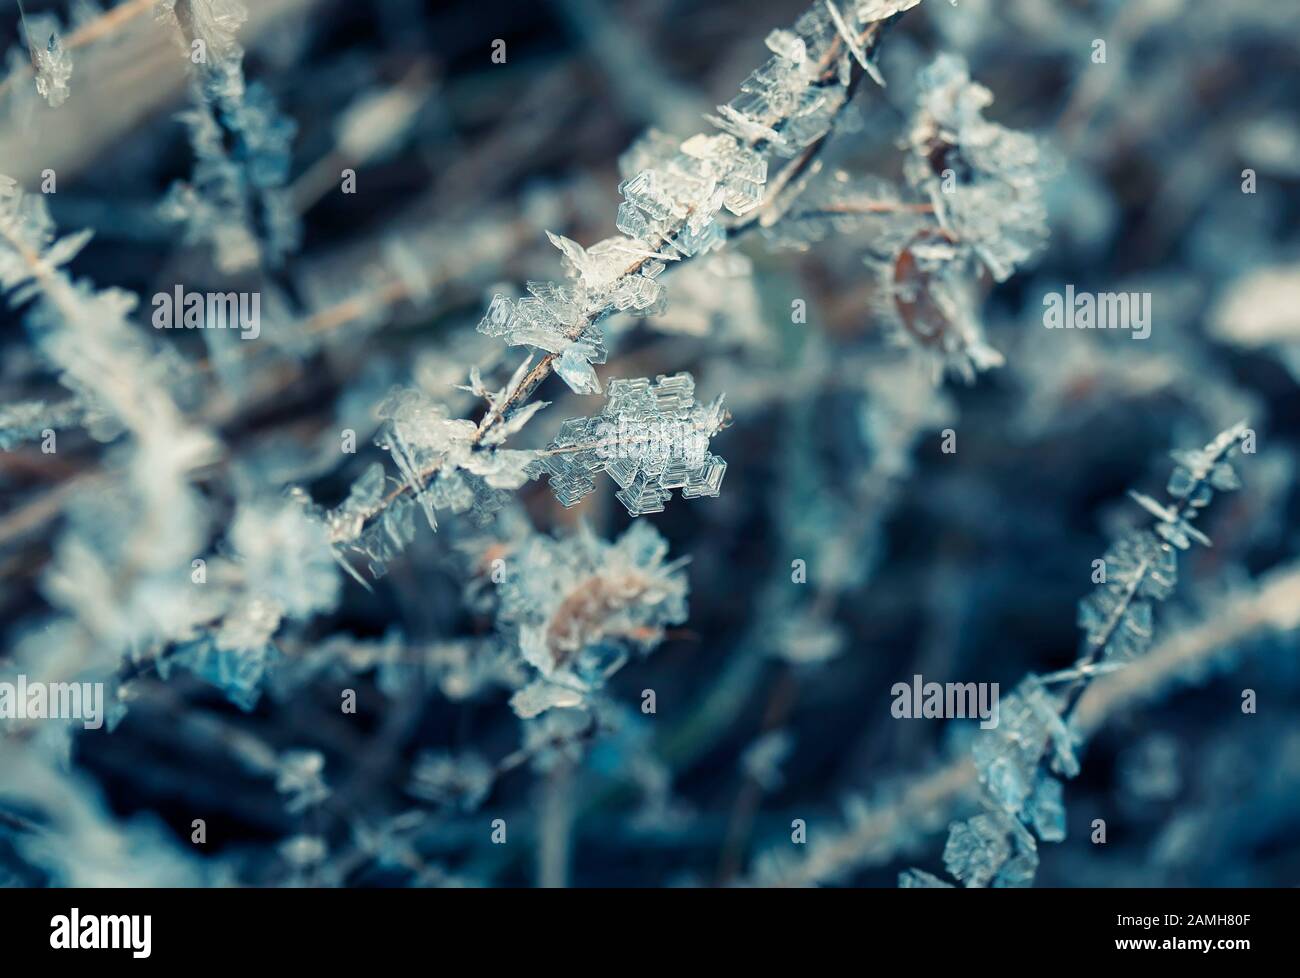 Natürlicher Hintergrund mit Gras bewachsen glänzende transparente Kristalle aus kaltem blauem Frost sind wie Perlen an einem sonnigen Wintermorgen aufgereiht Stockfoto